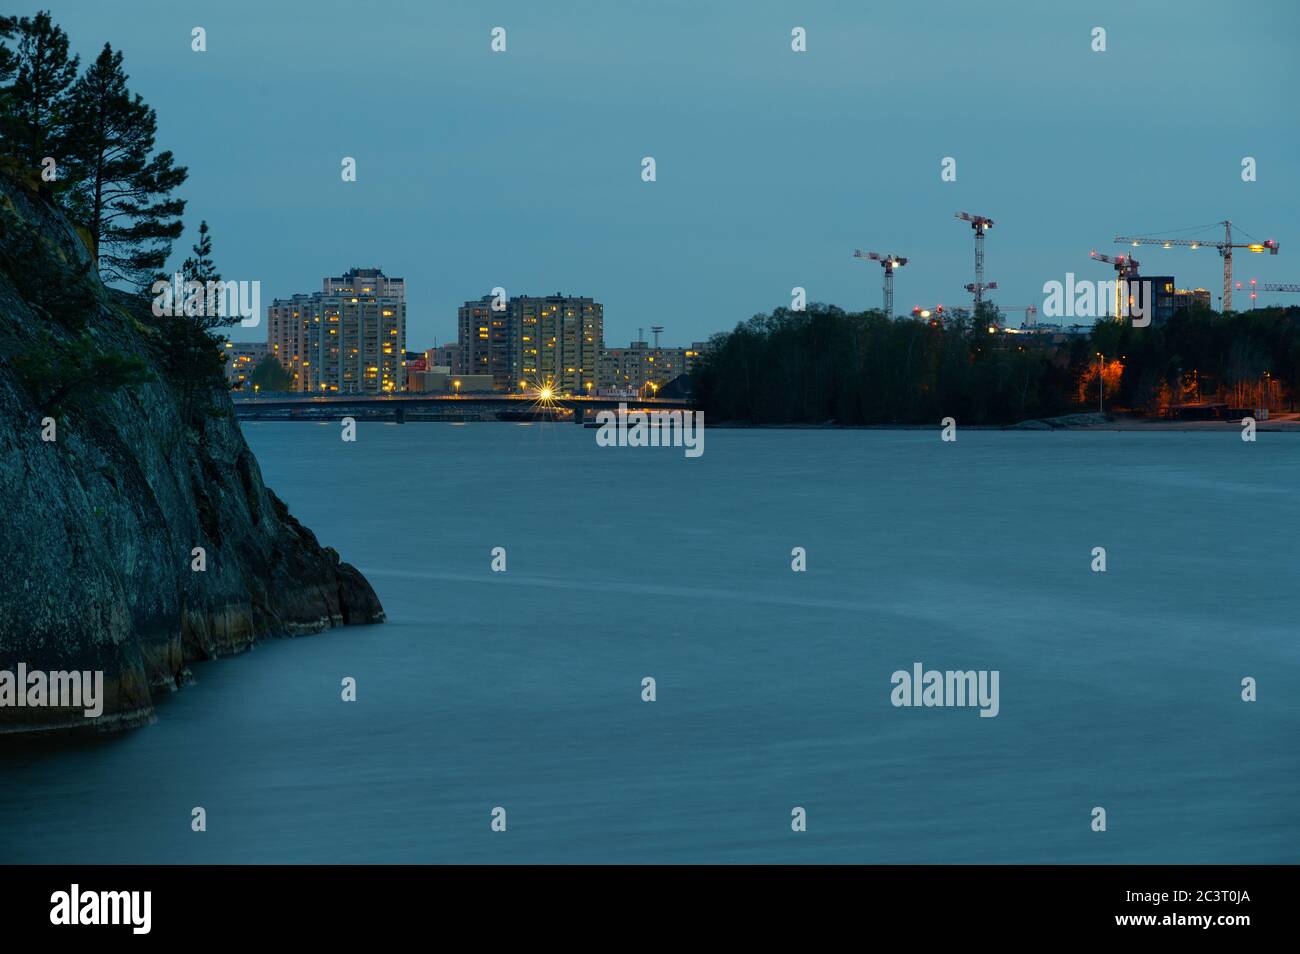 Eine wunderschöne Skyline von Helsinki zwischen zwei Inseln in einer ruhigen Sommernacht. Stockfoto